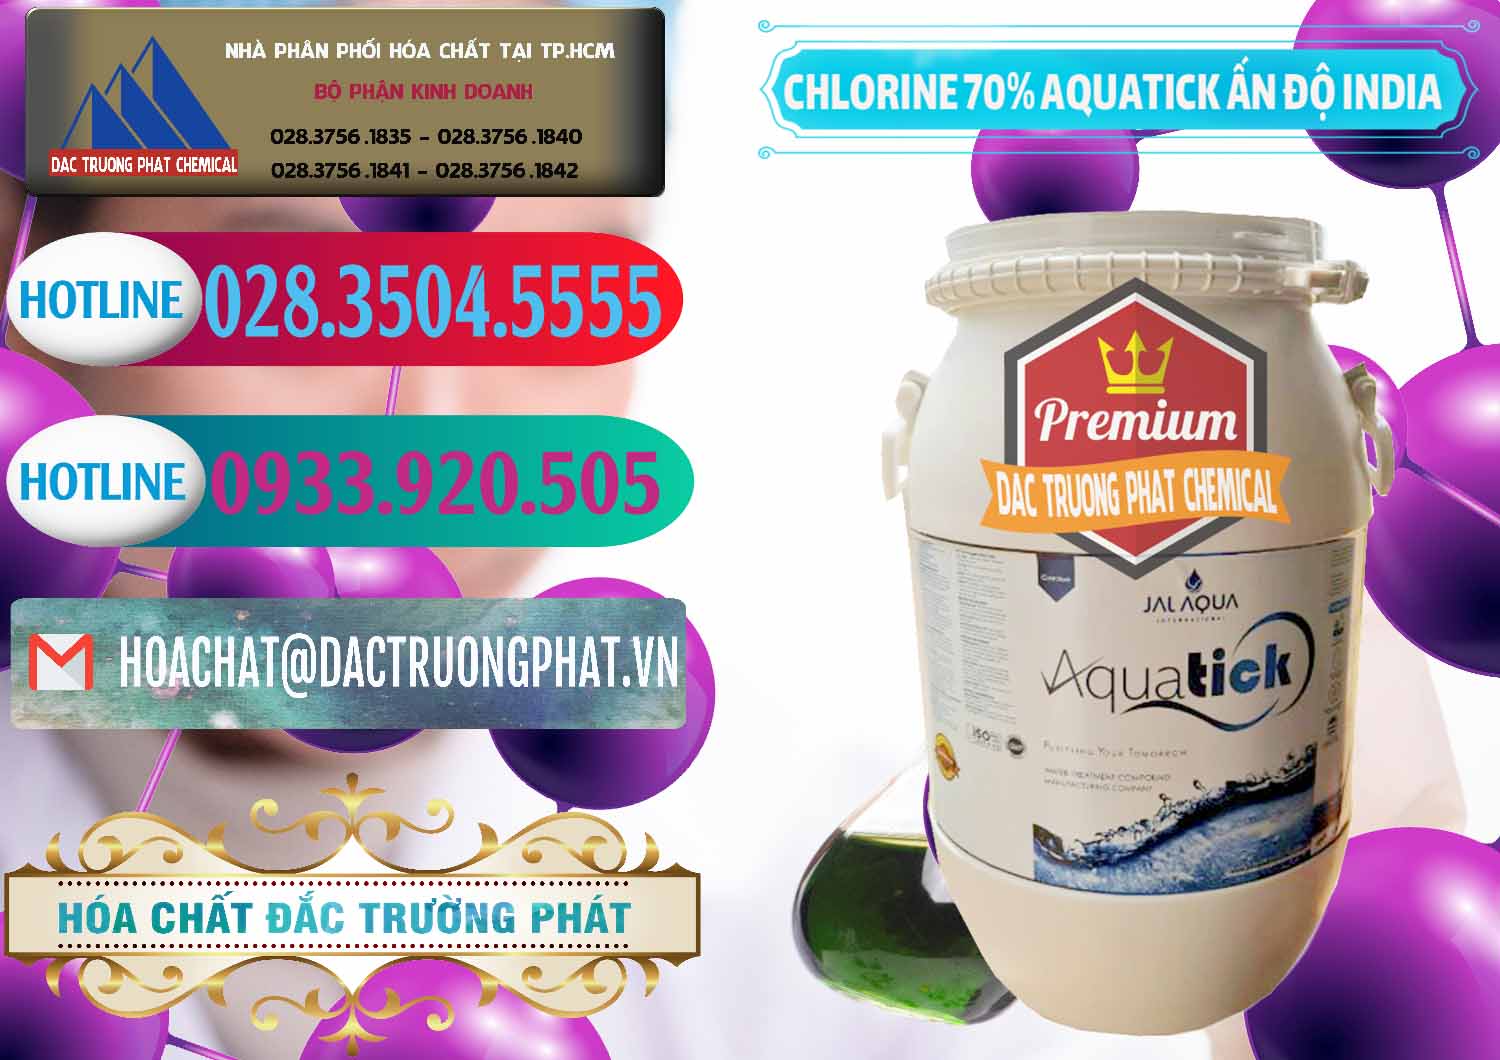 Nơi bán & cung cấp Chlorine – Clorin 70% Aquatick Jal Aqua Ấn Độ India - 0215 - Công ty chuyên nhập khẩu _ cung cấp hóa chất tại TP.HCM - truongphat.vn